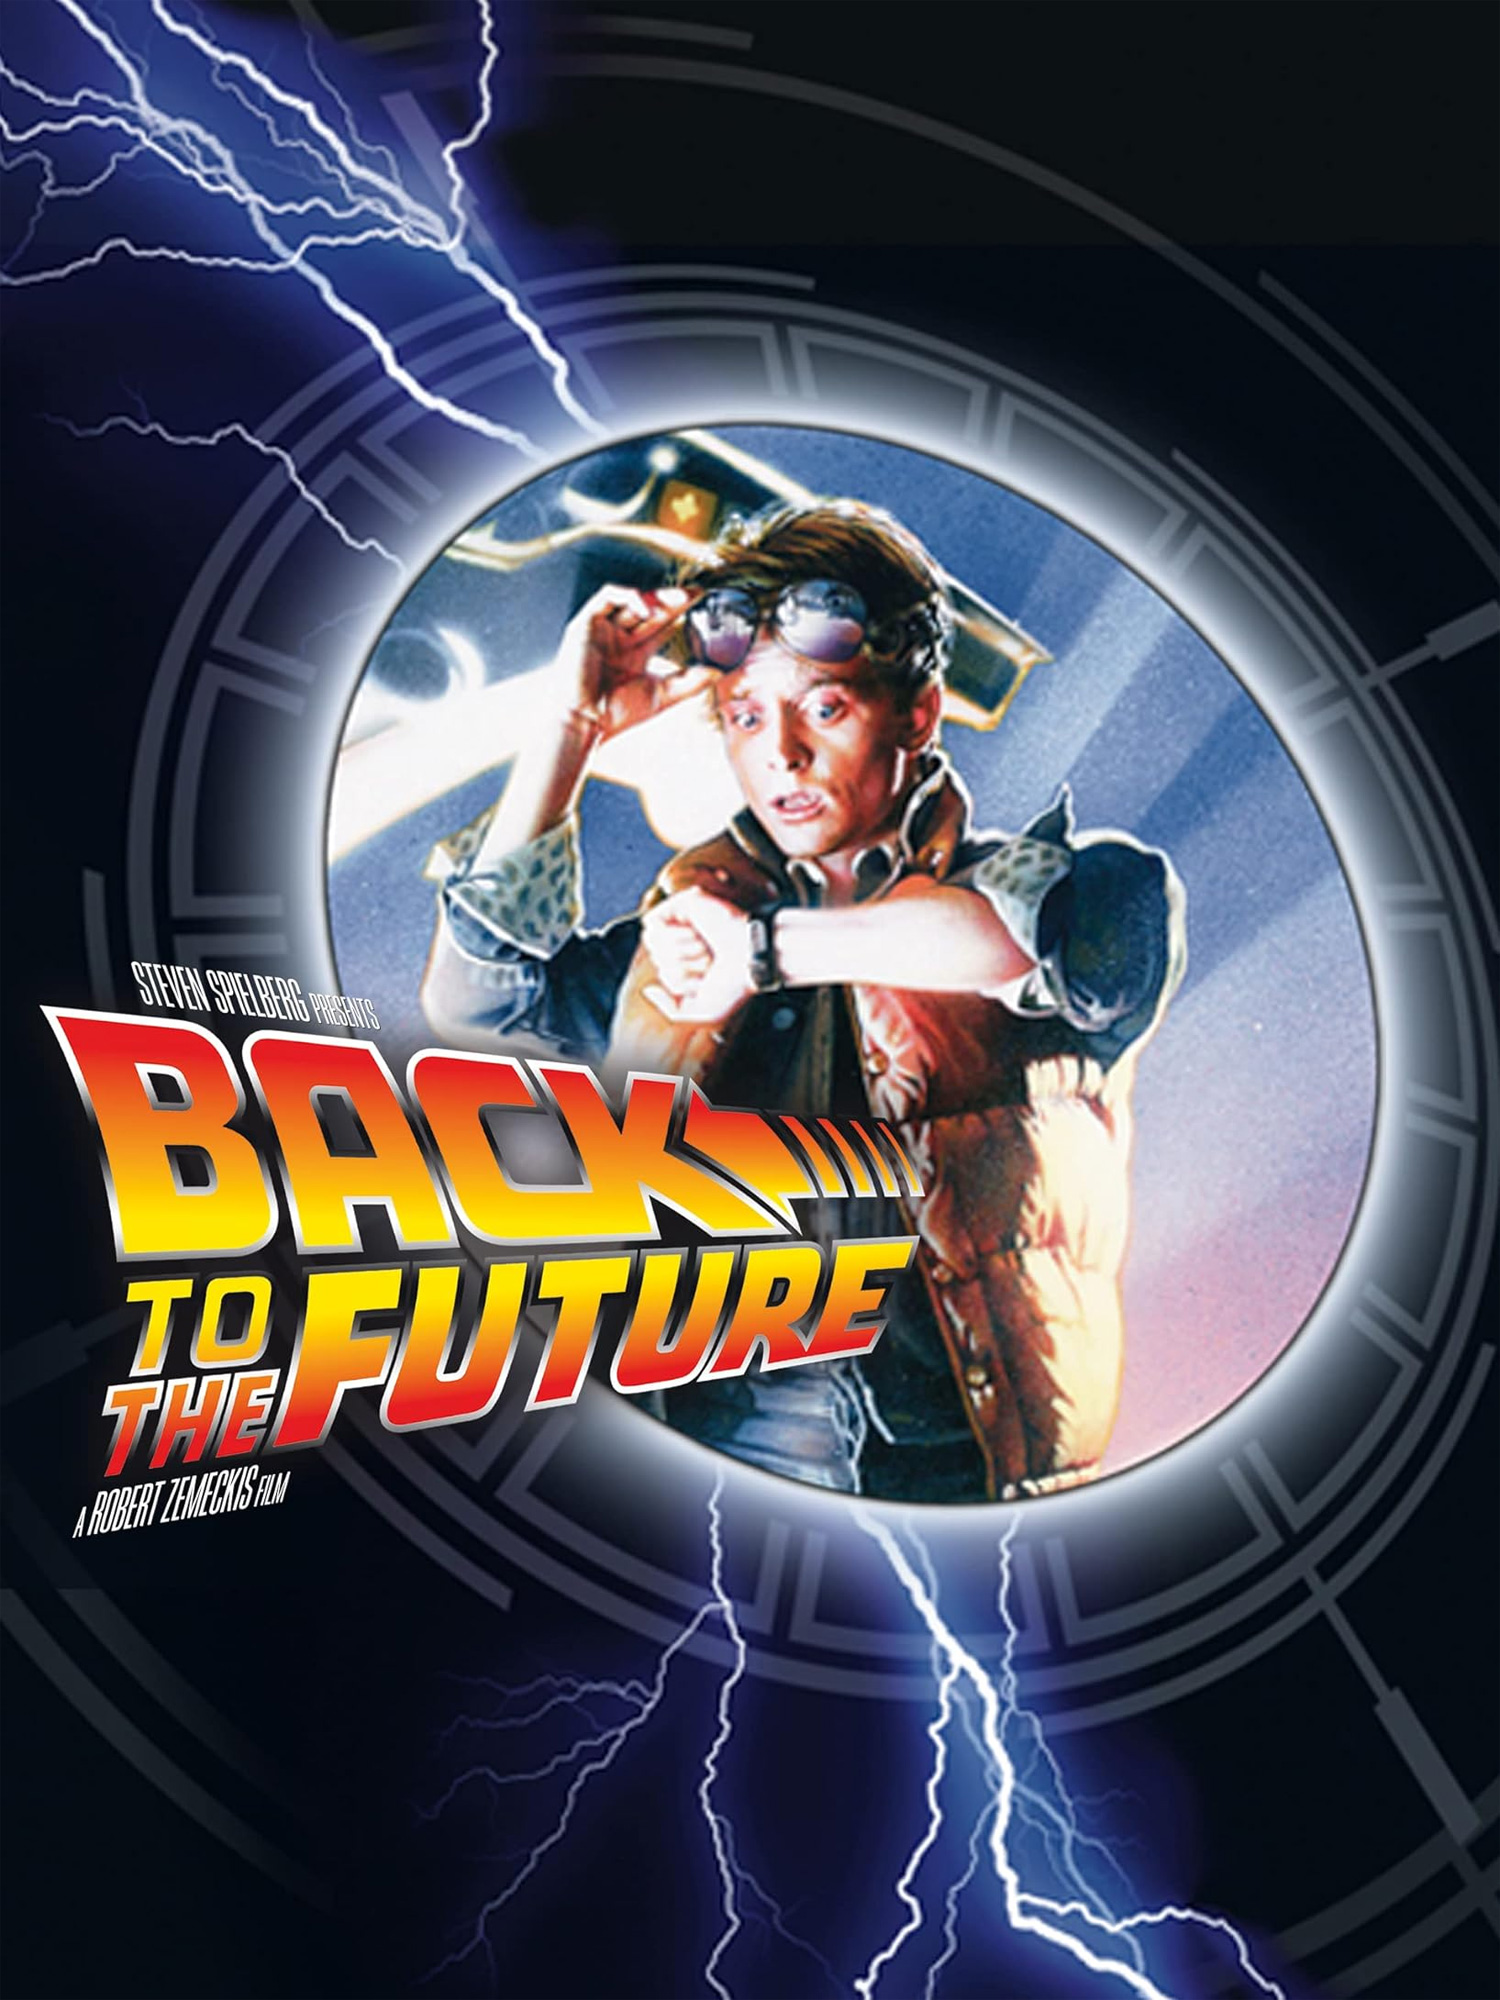 Ritorno al Futuro. La trilogia (4 DVD) - DVD - Film di Robert Zemeckis  Avventura